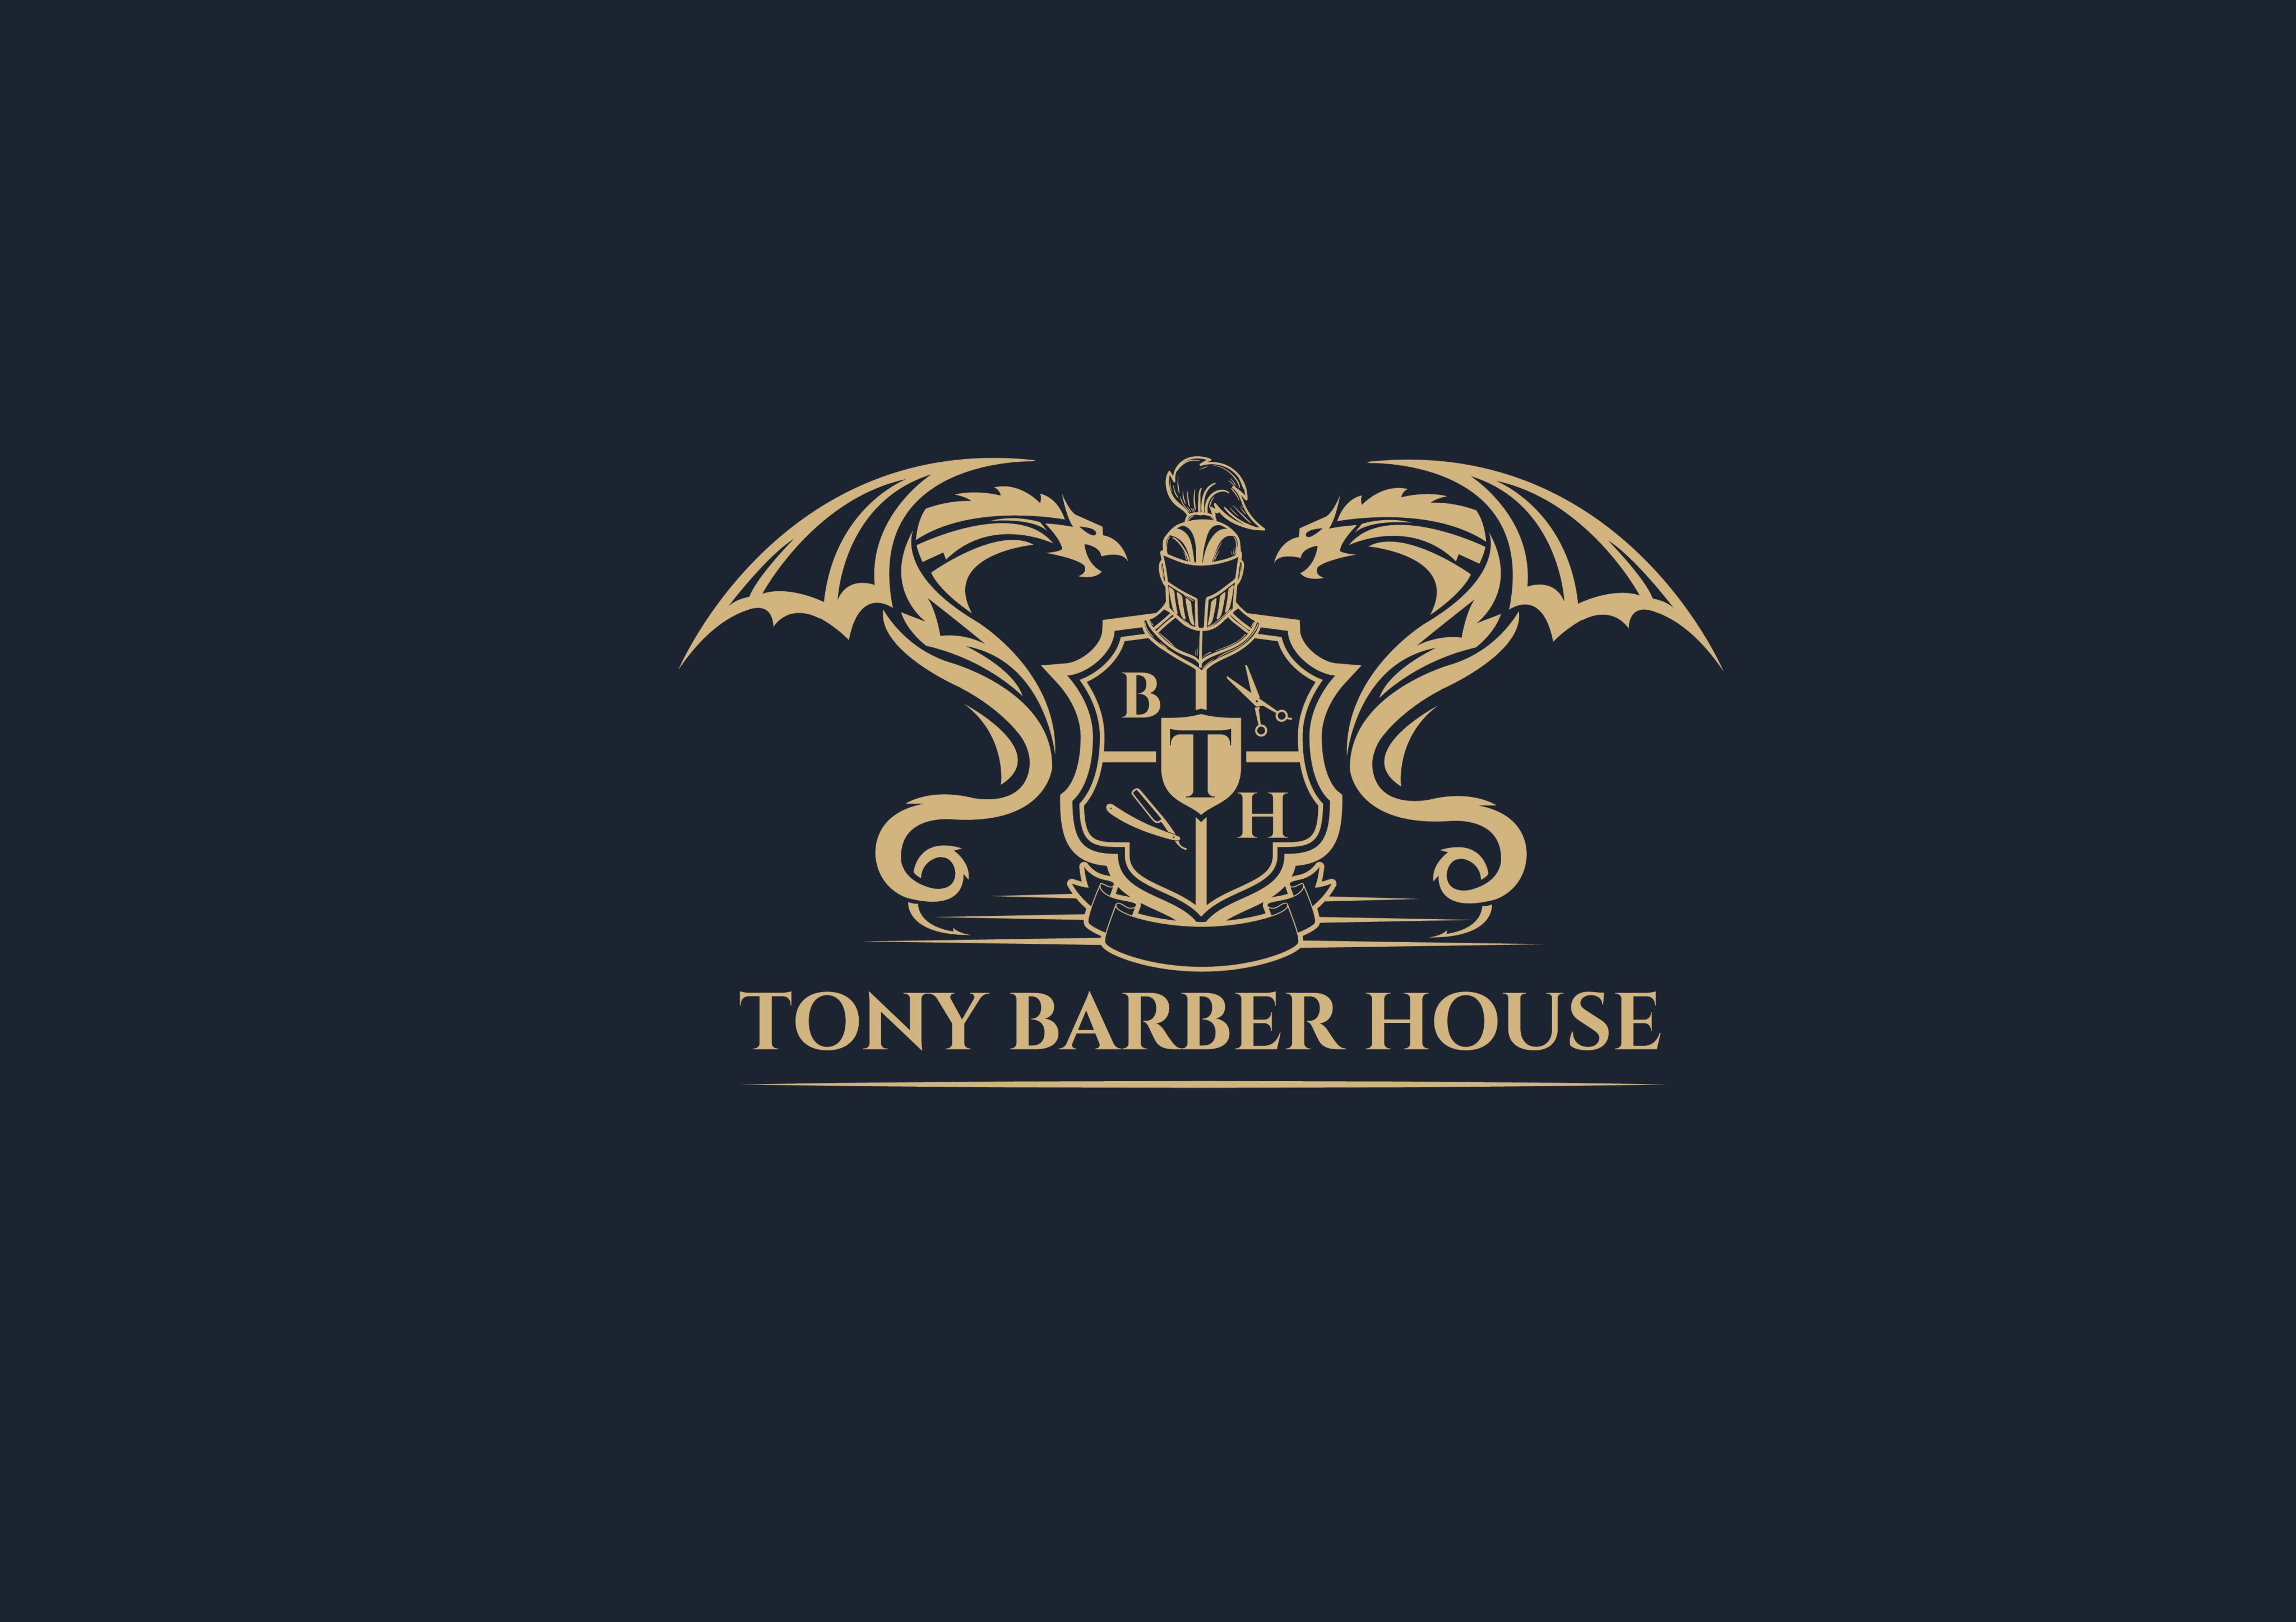 TONY BARBER HOUSE